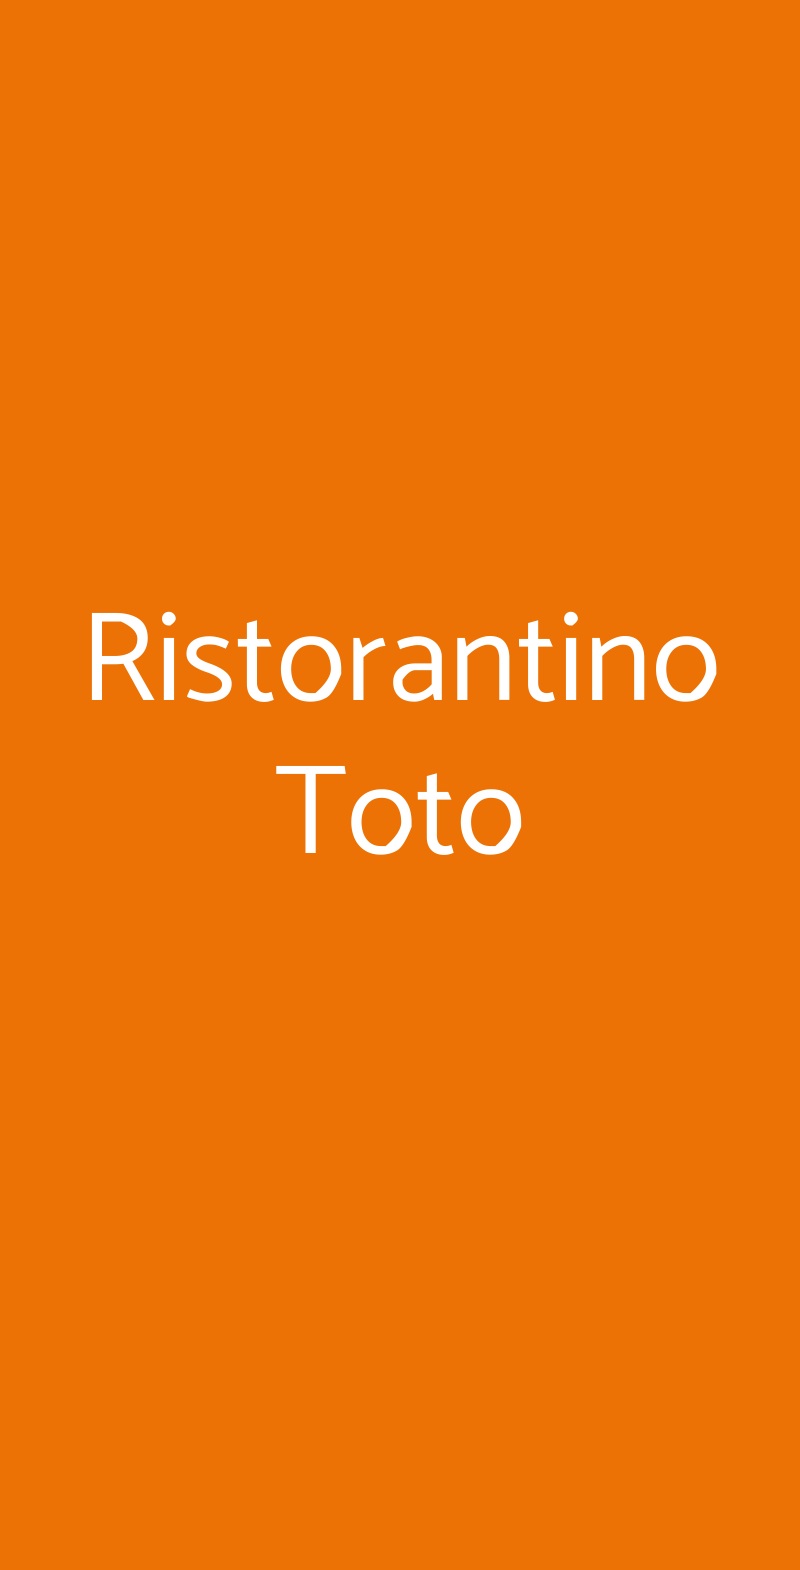 Ristorantino Toto Pavia menù 1 pagina